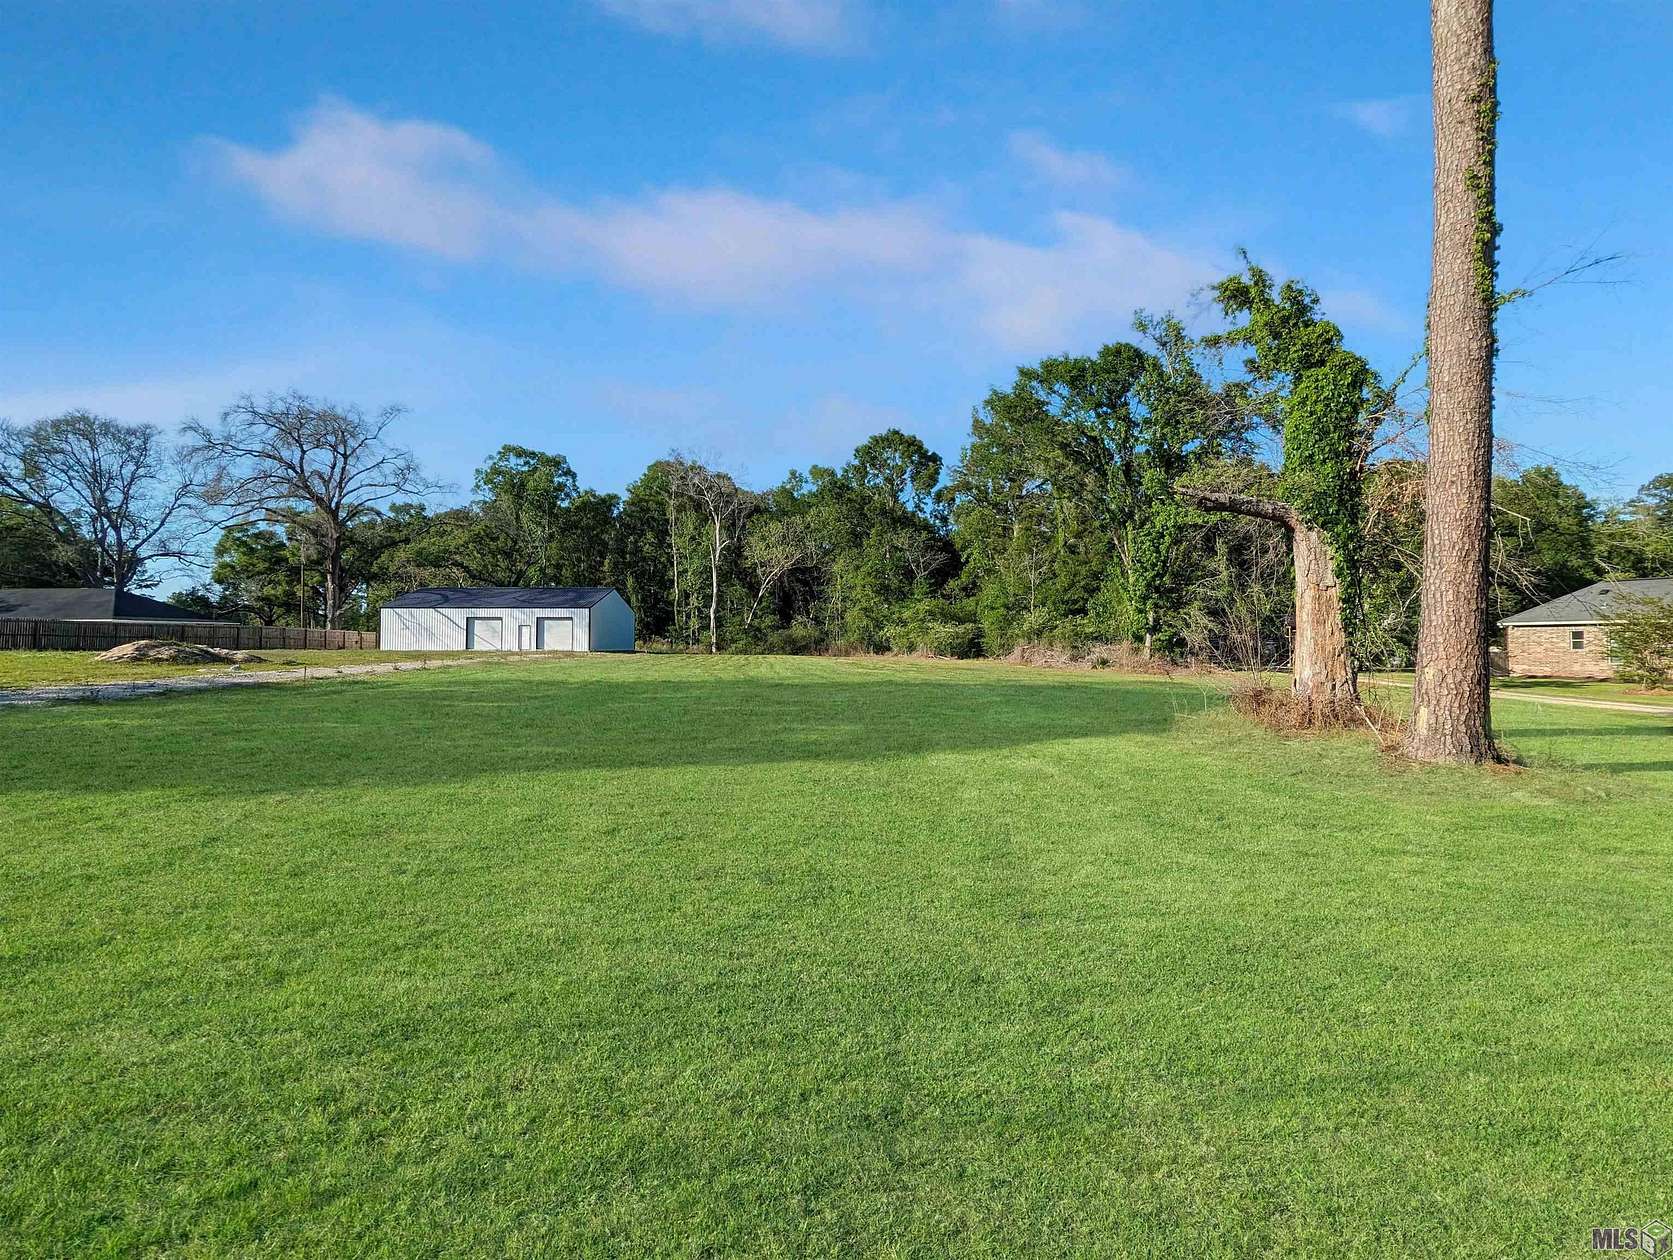 1 Acre of Residential Land for Sale in Denham Springs, Louisiana